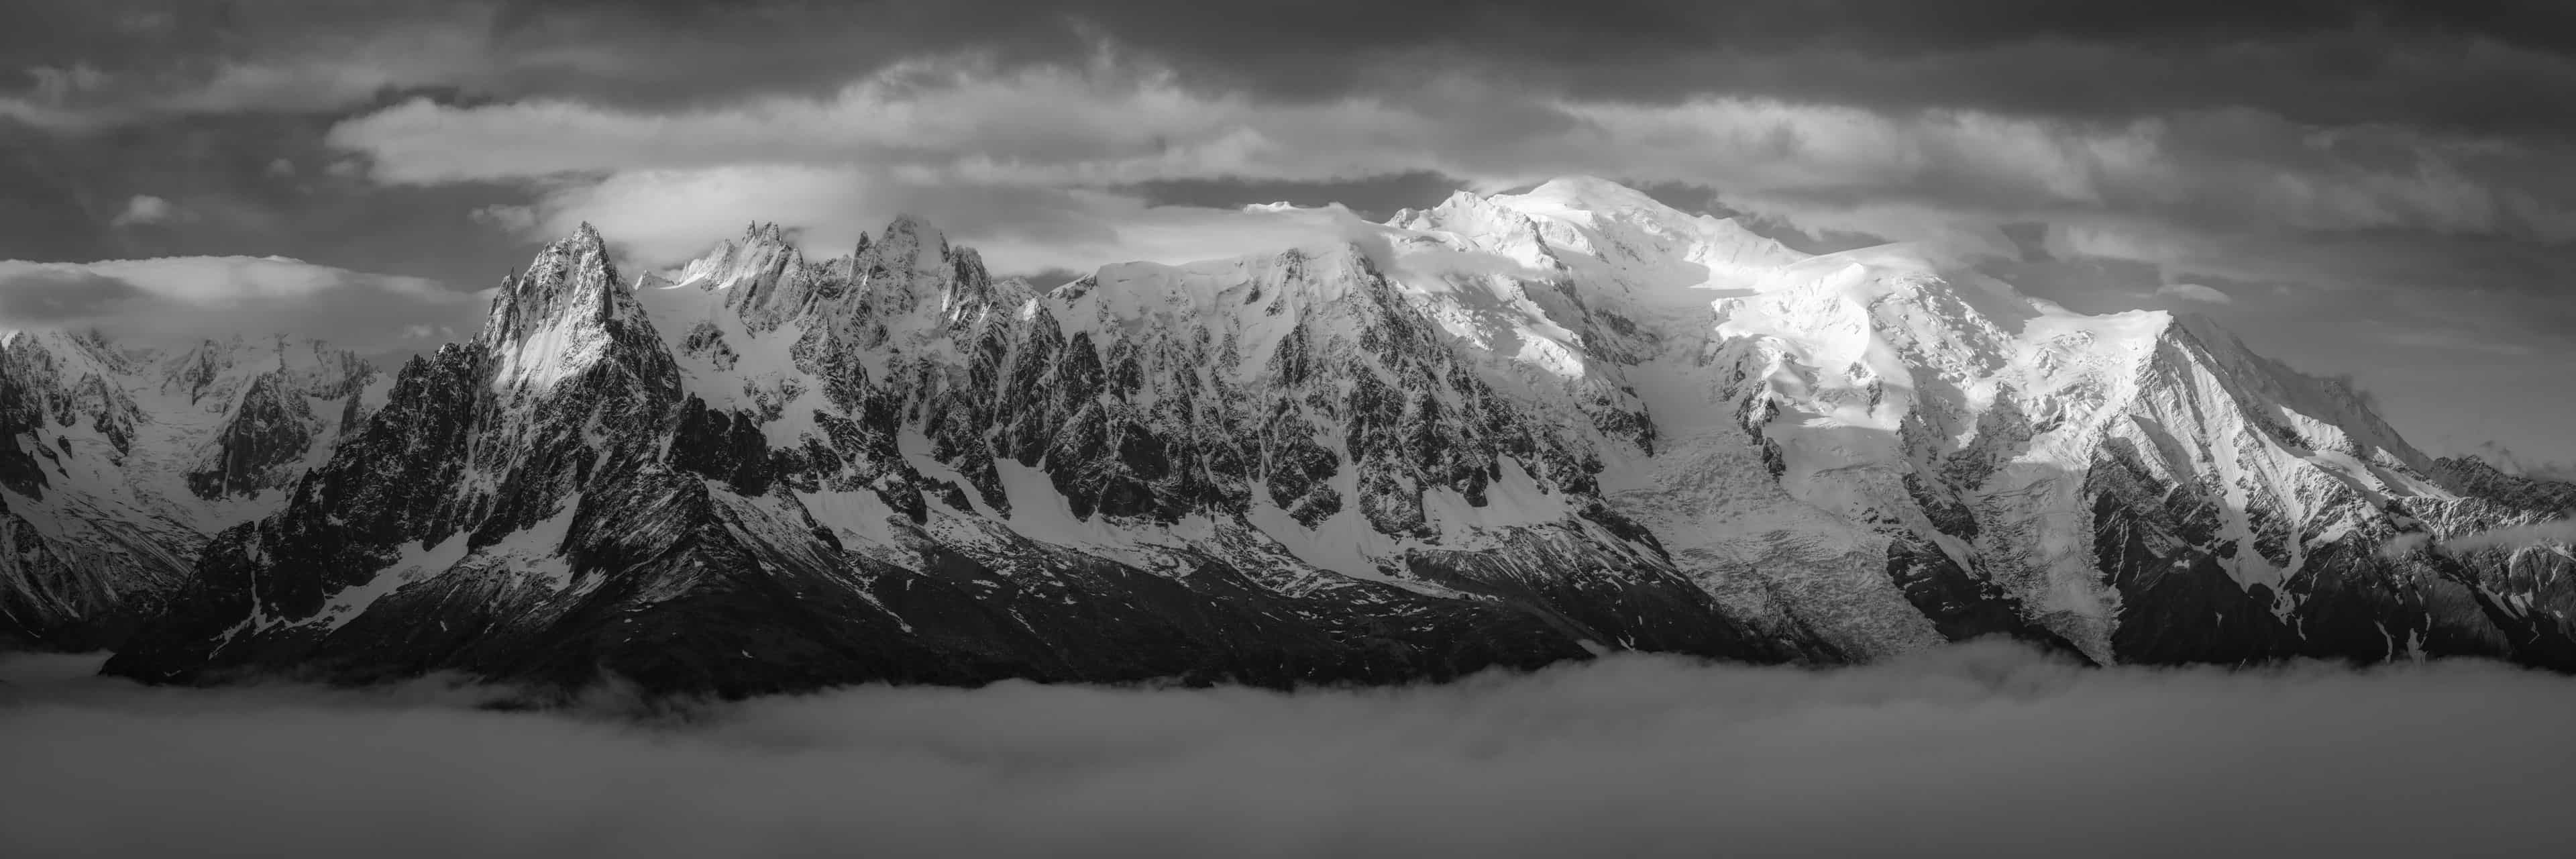 Mont Blanc massif - Picture of Chamonix et and aiguilles de Chamonix image